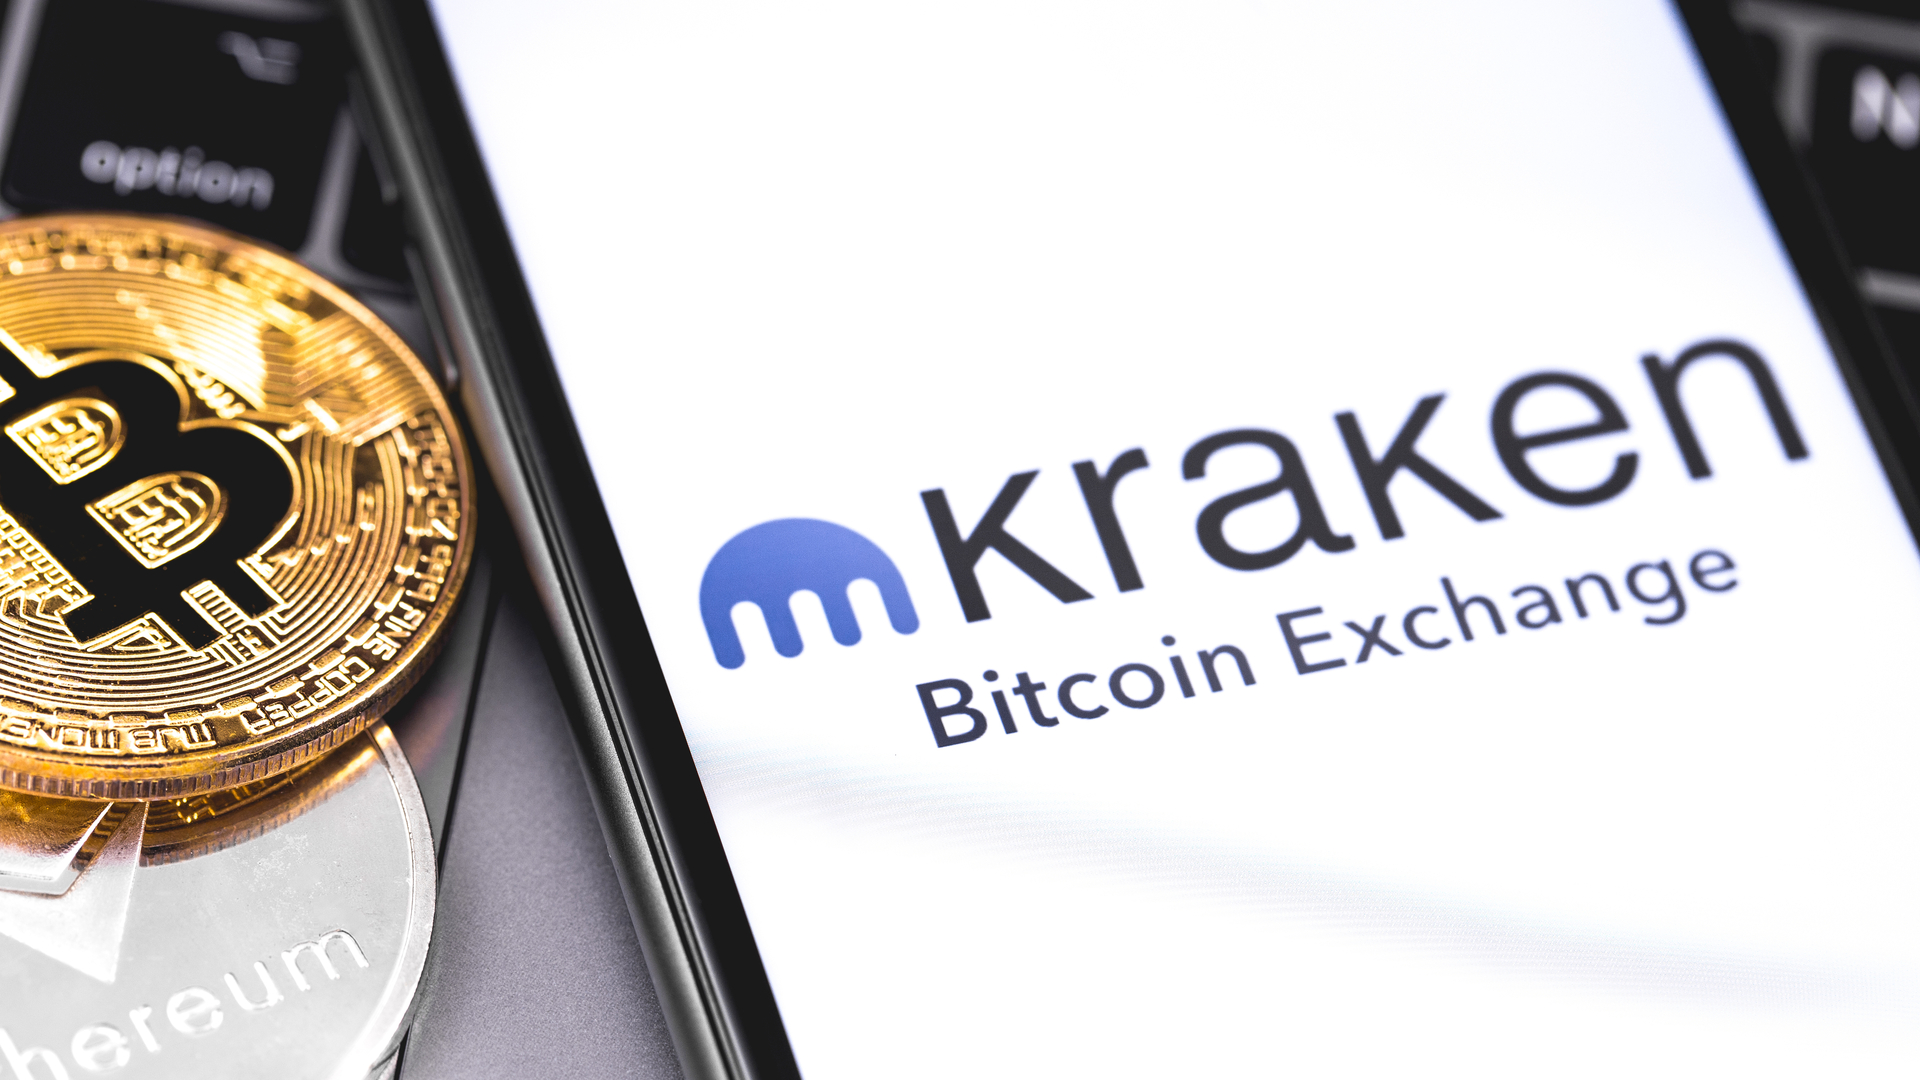 can you buy partial half a bitcoin from kraken